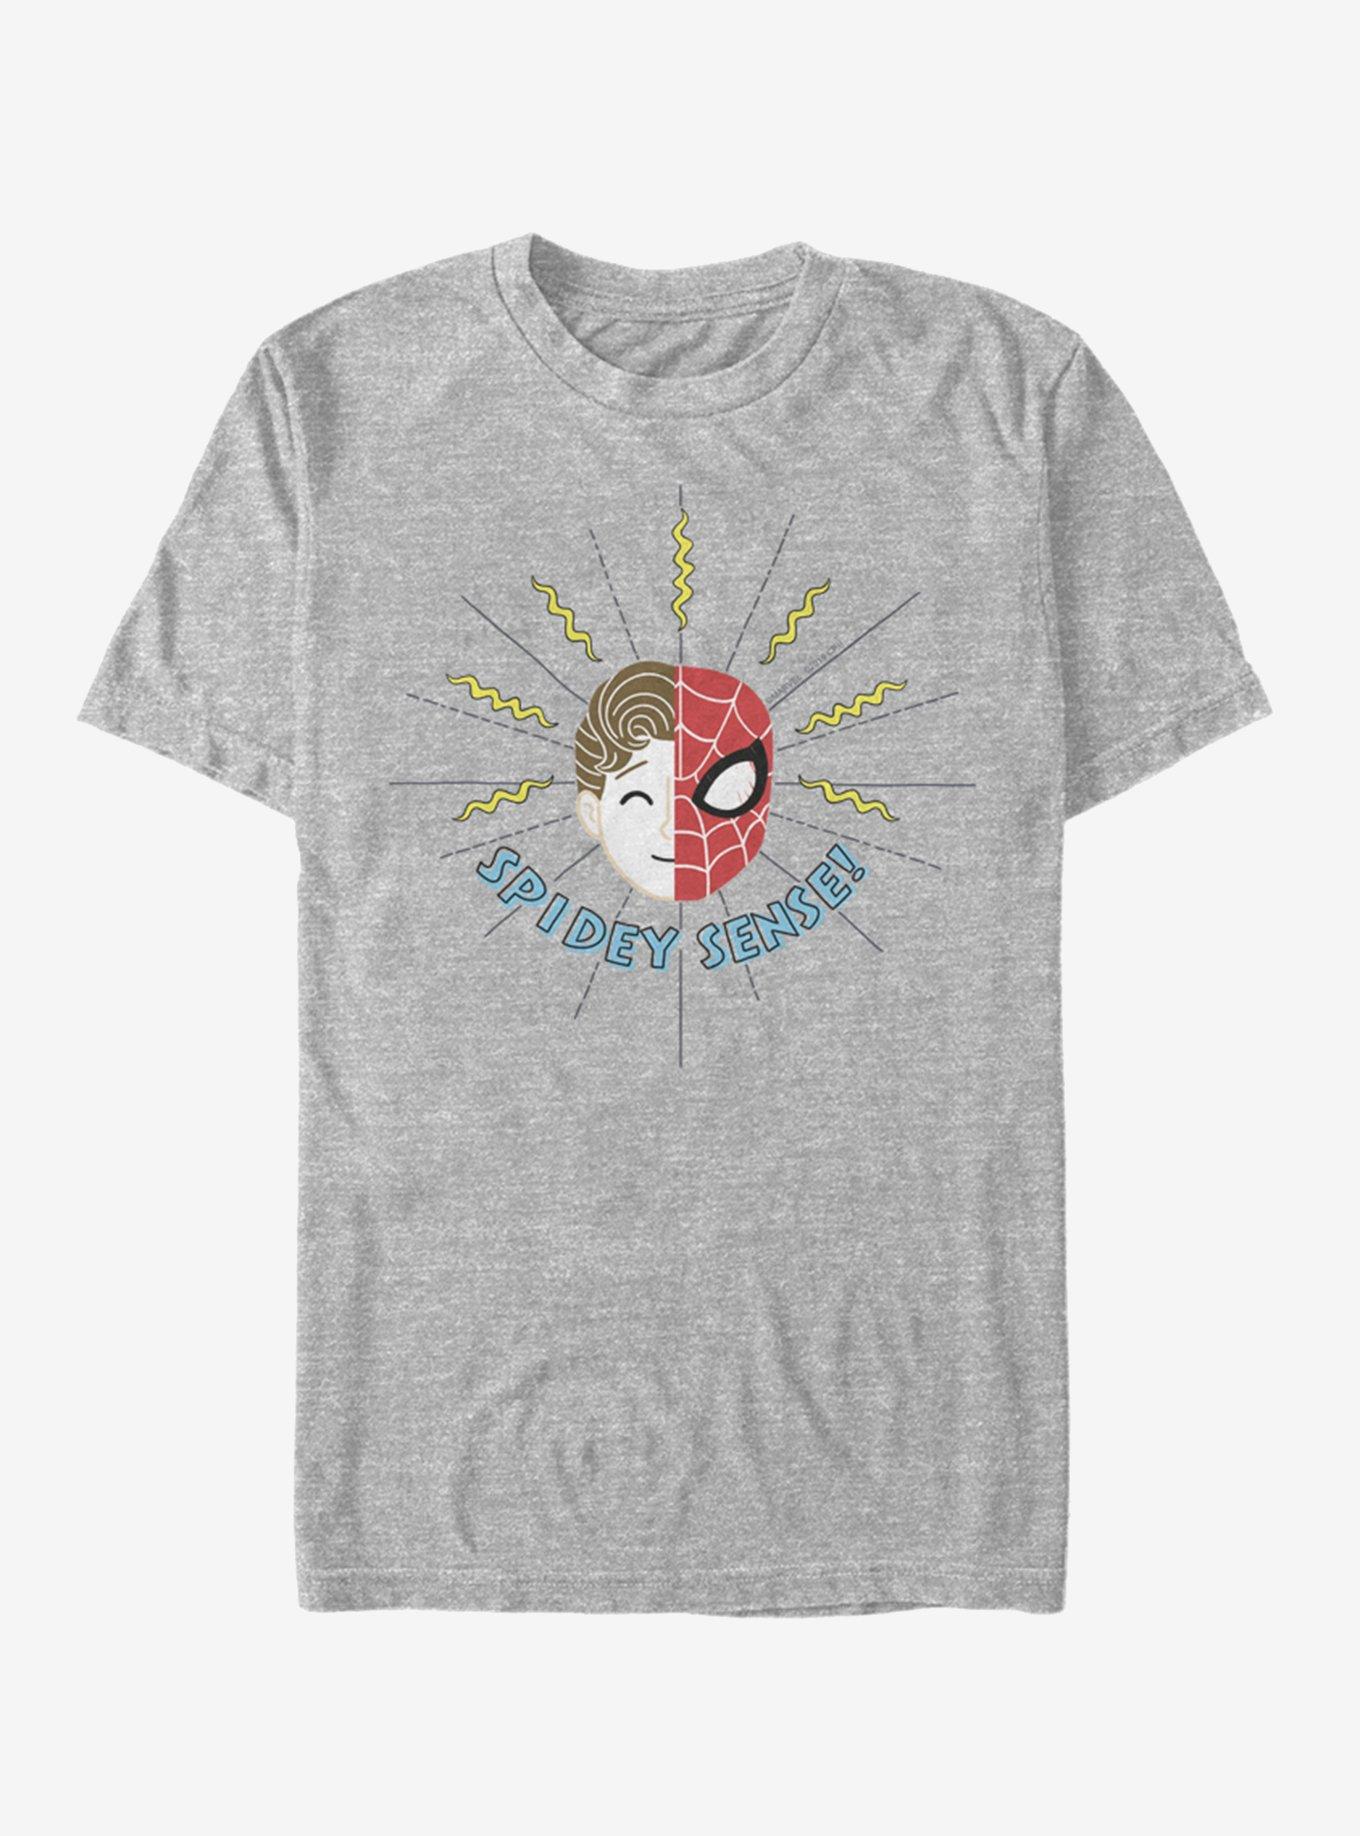 Marvel Spider-Man Spidey Sense T-Shirt